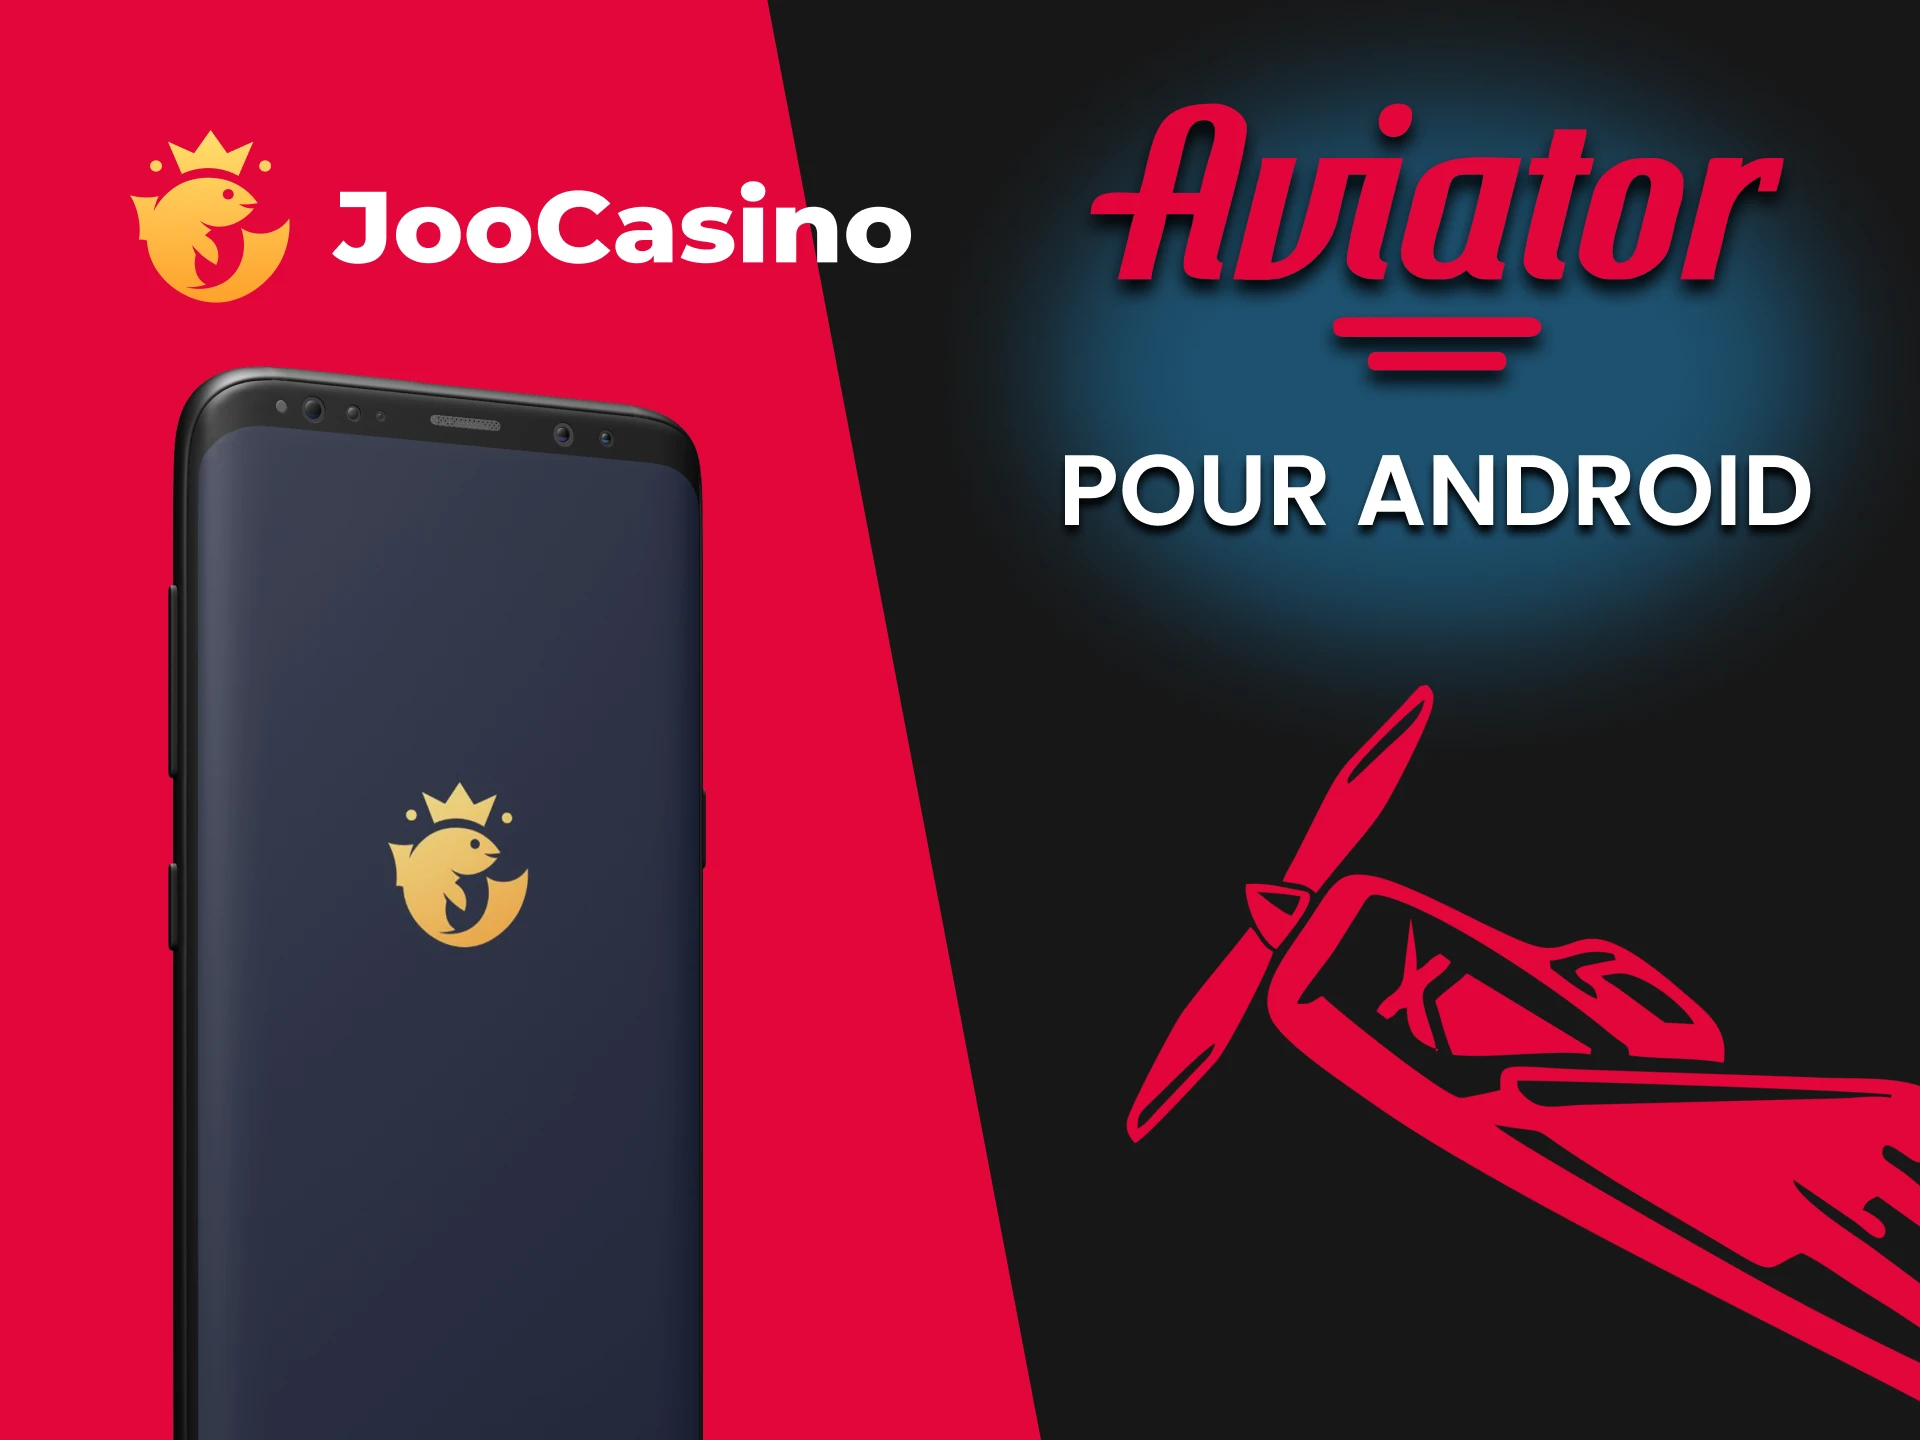 Jouez à Aviator via l'application Joo Casino sur Android.